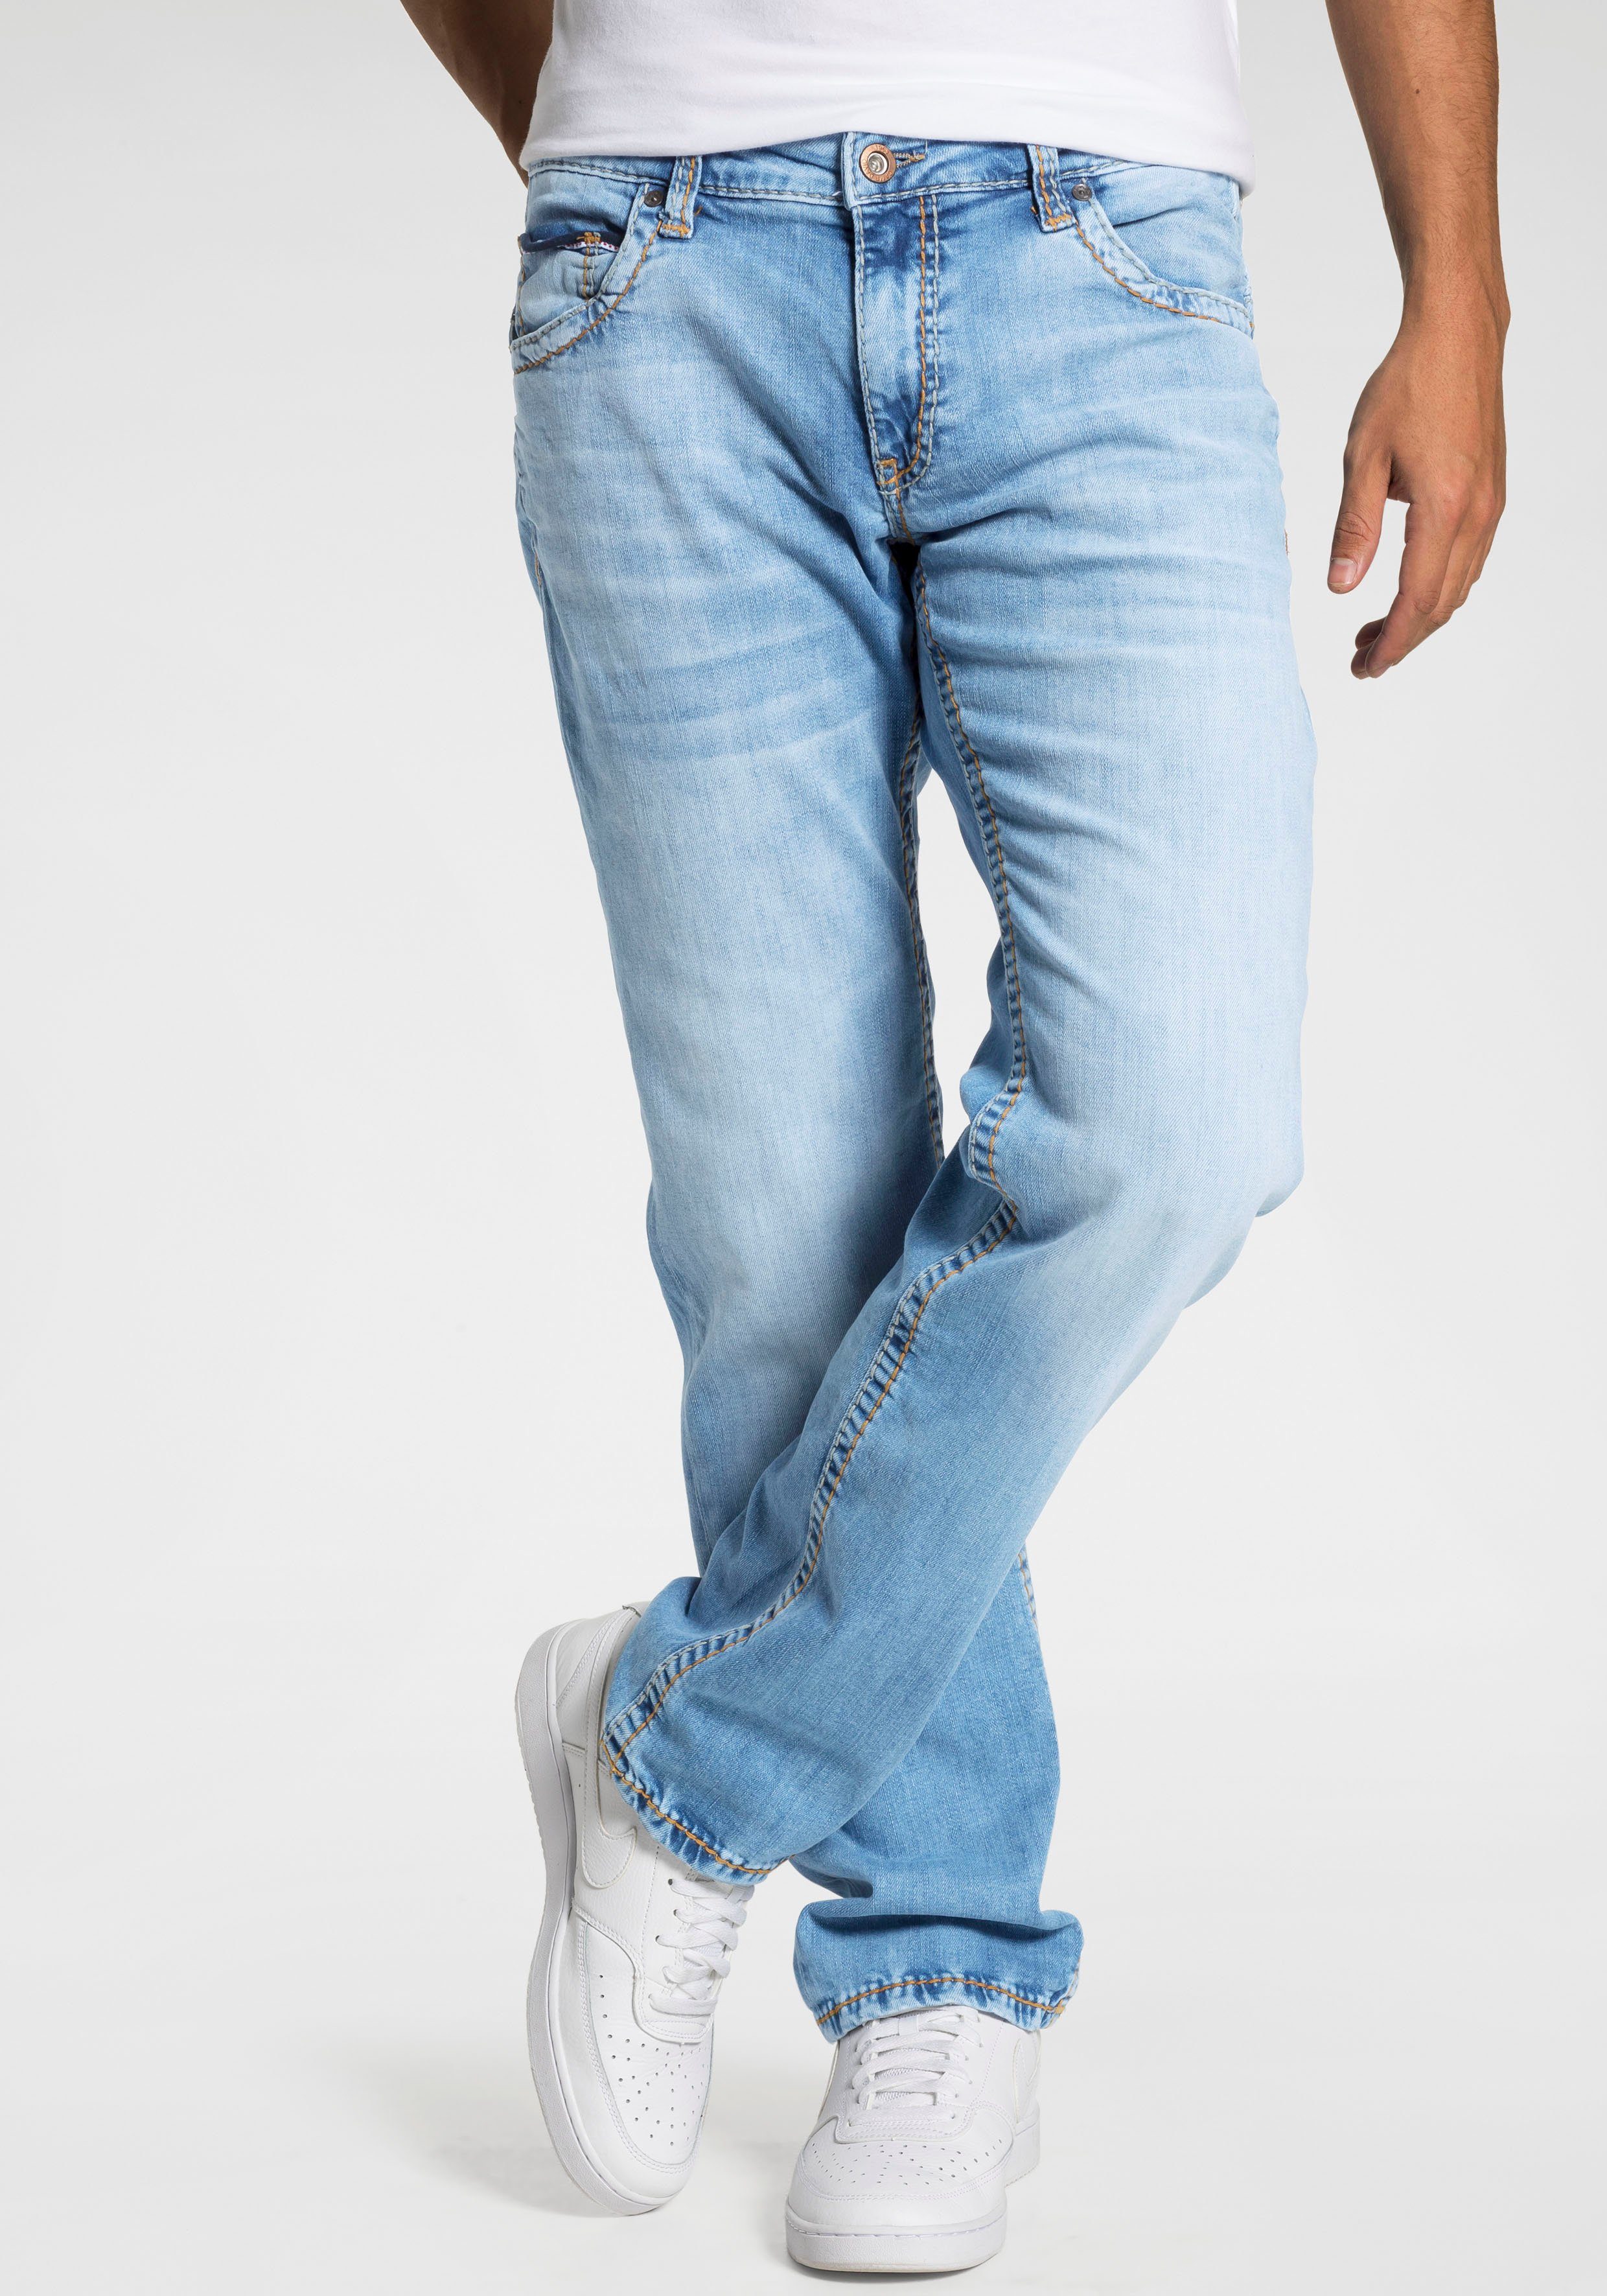 CAMP DAVID Loose-fit-Jeans CO:NO:C622 mit markanten Nähten